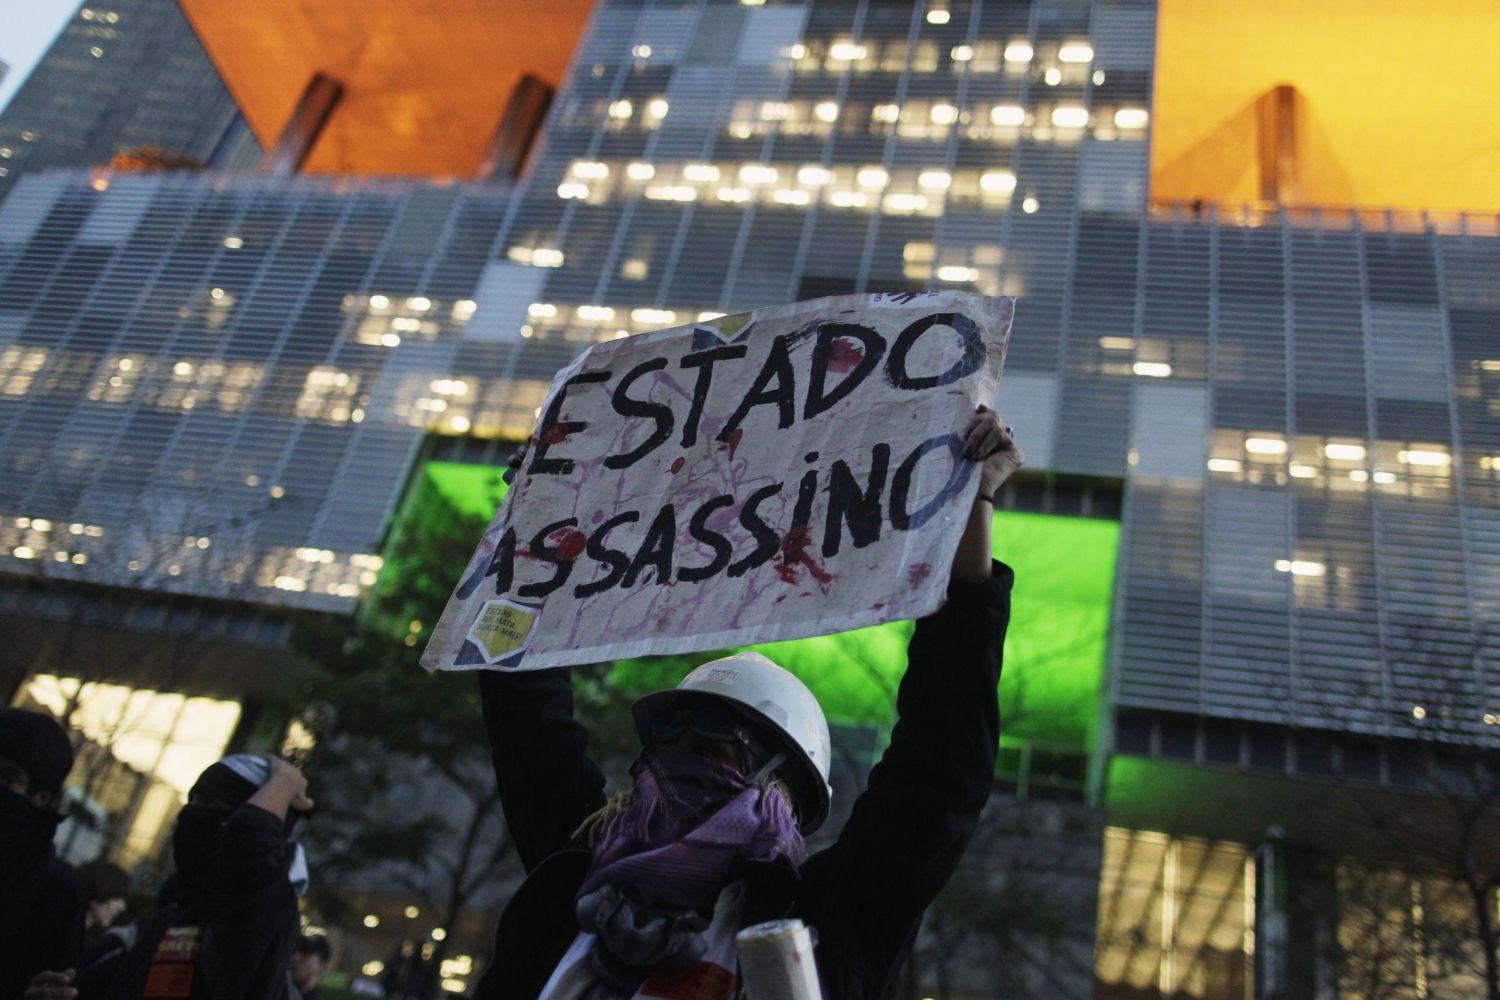 Tiltakozás a riói Petrobras-székház előtt tavaly októberben. Az állami olajcég akkora válságban van, hogy piacra kellett dobnia a valaha felfedezett legnagyobb brazil olajmező, a Libra kitermelési jogait